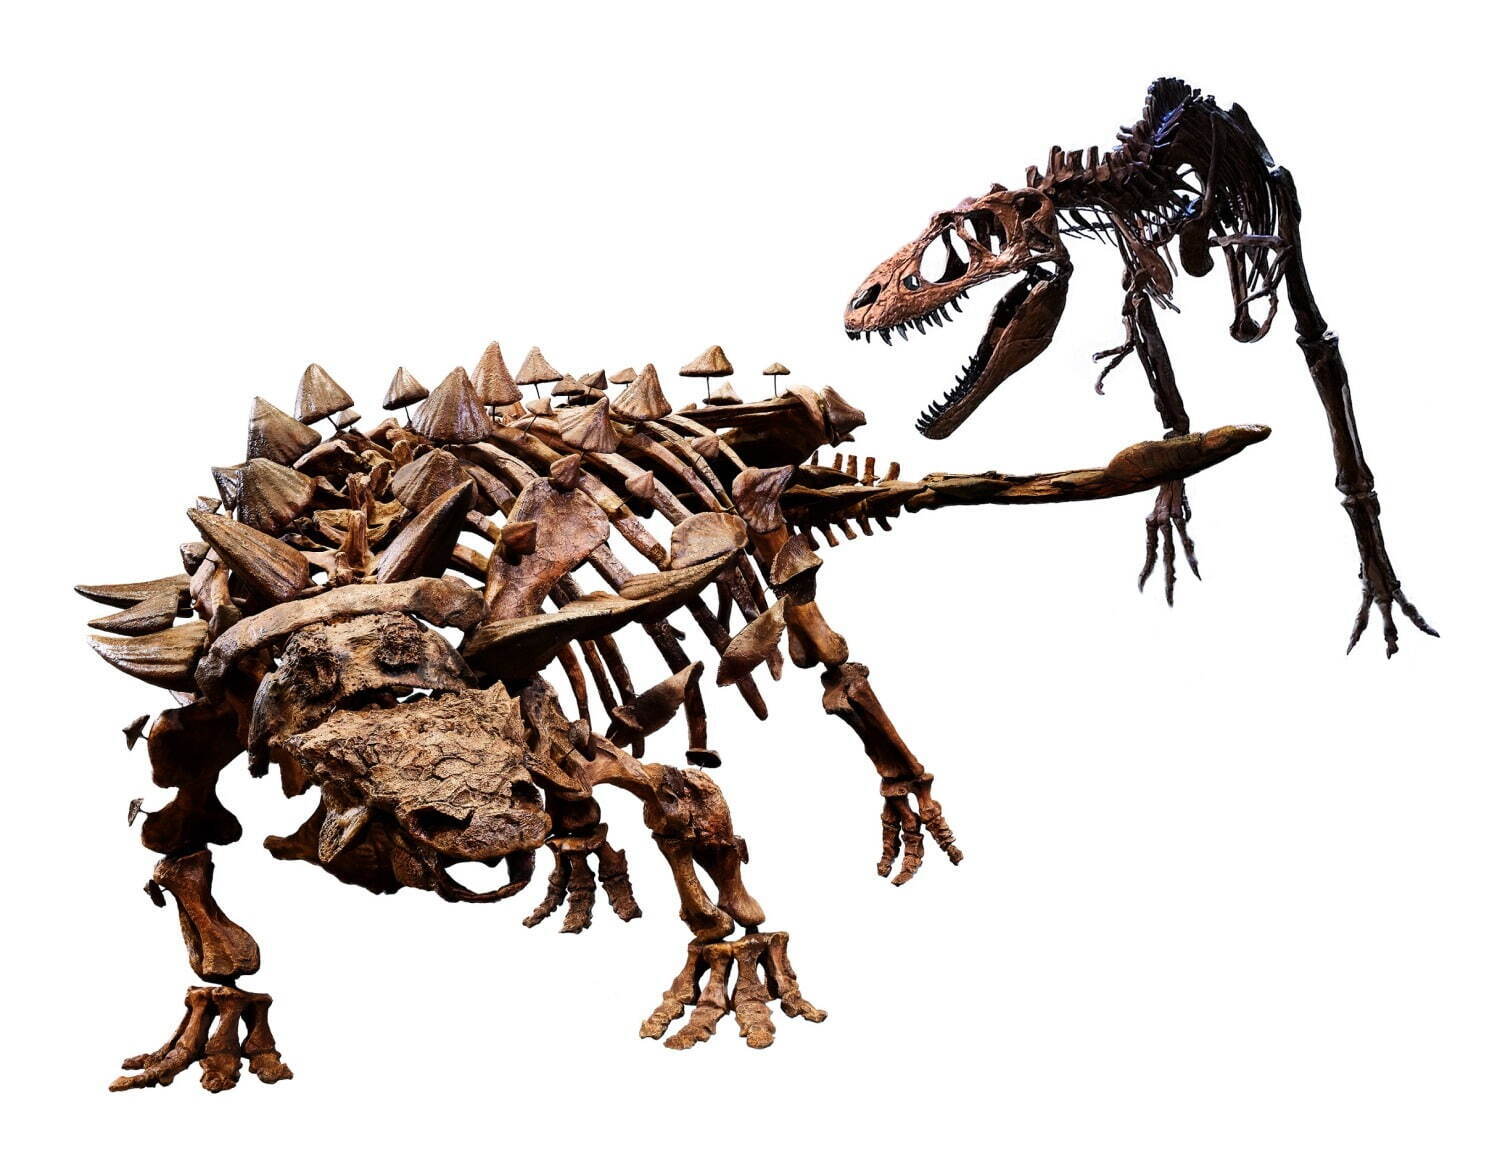 ズールとゴルゴサウルスの対峙シーン
©Royal Ontario Museum photographed by Paul Eekhoff